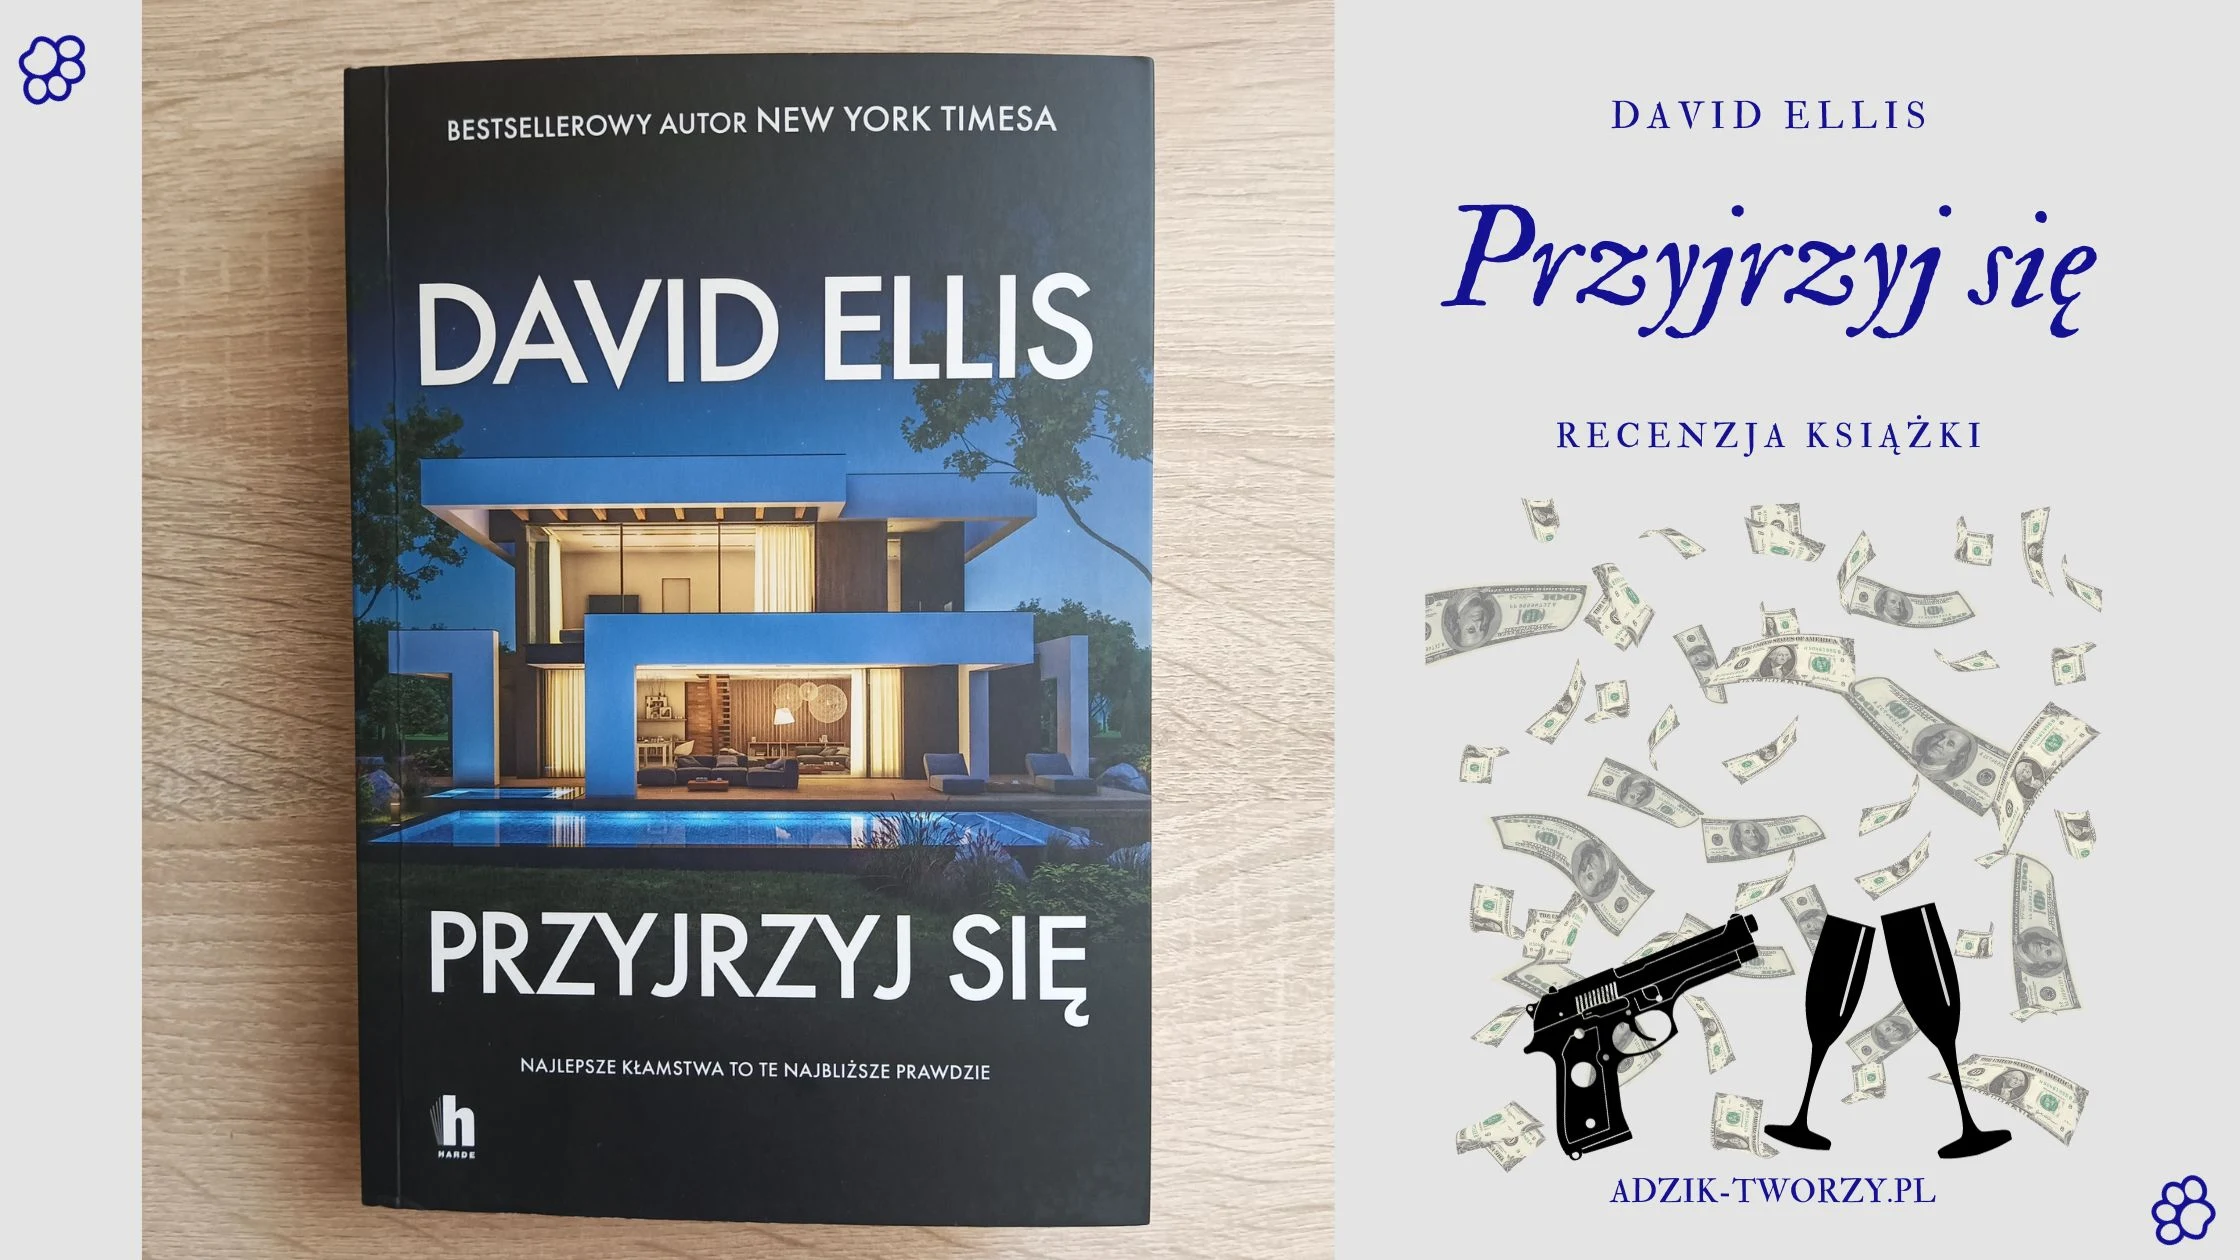 Recenzja książki "Przyjrzyj się" David Ellis - Blog DIY Adzik-tworzy.pl